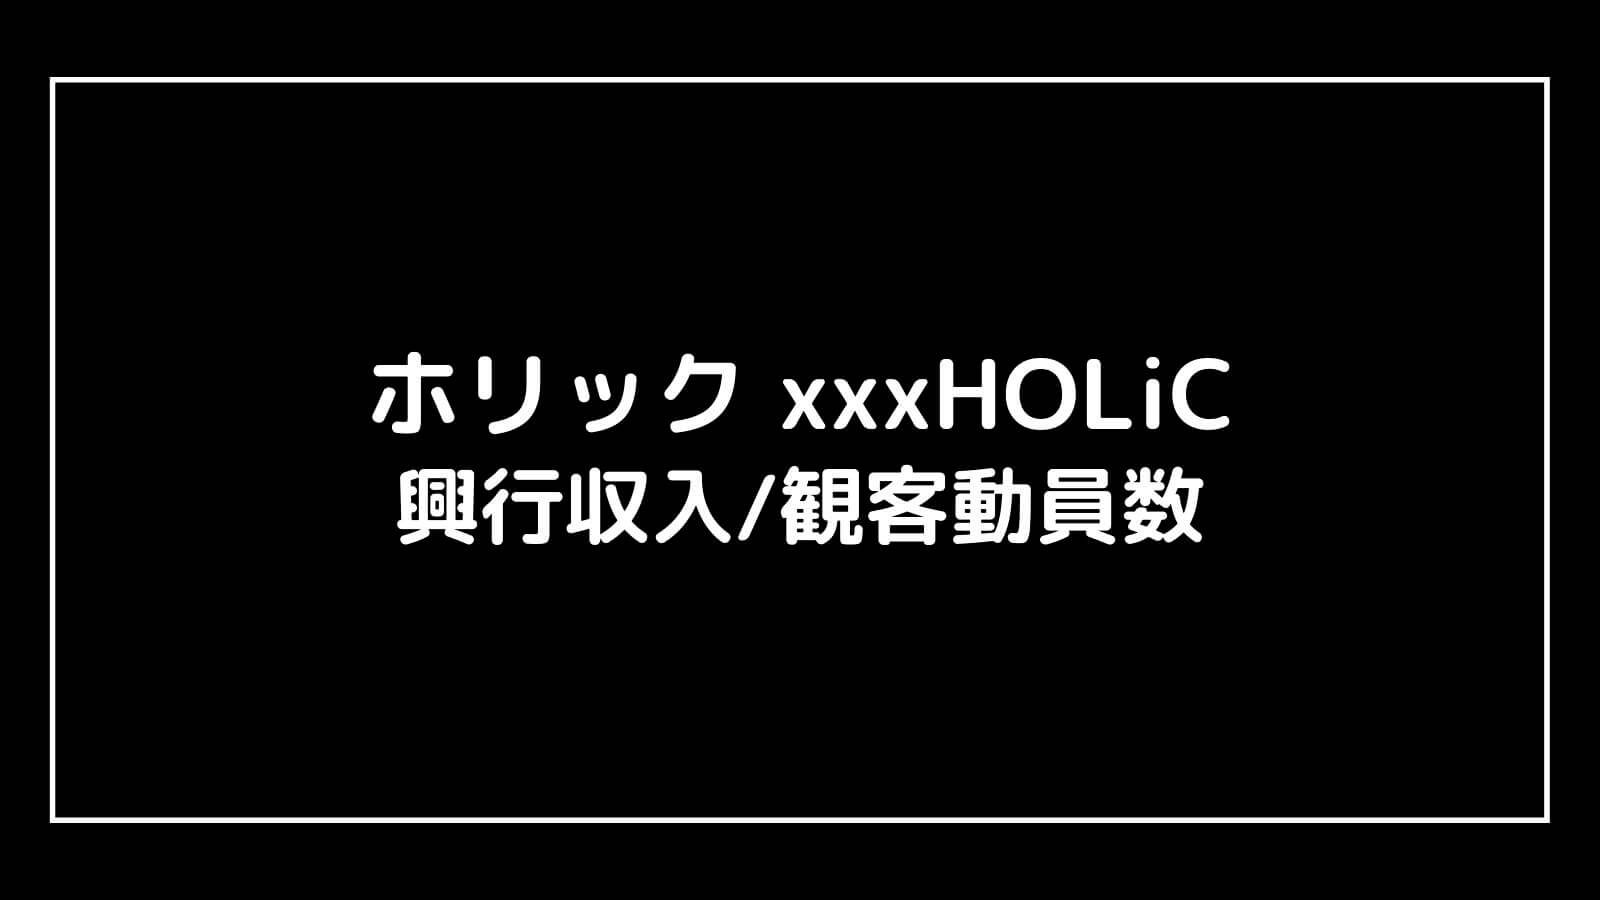 映画『ホリック xxxHOLiC』の興行収入推移と最終興収を元映画館社員が予想